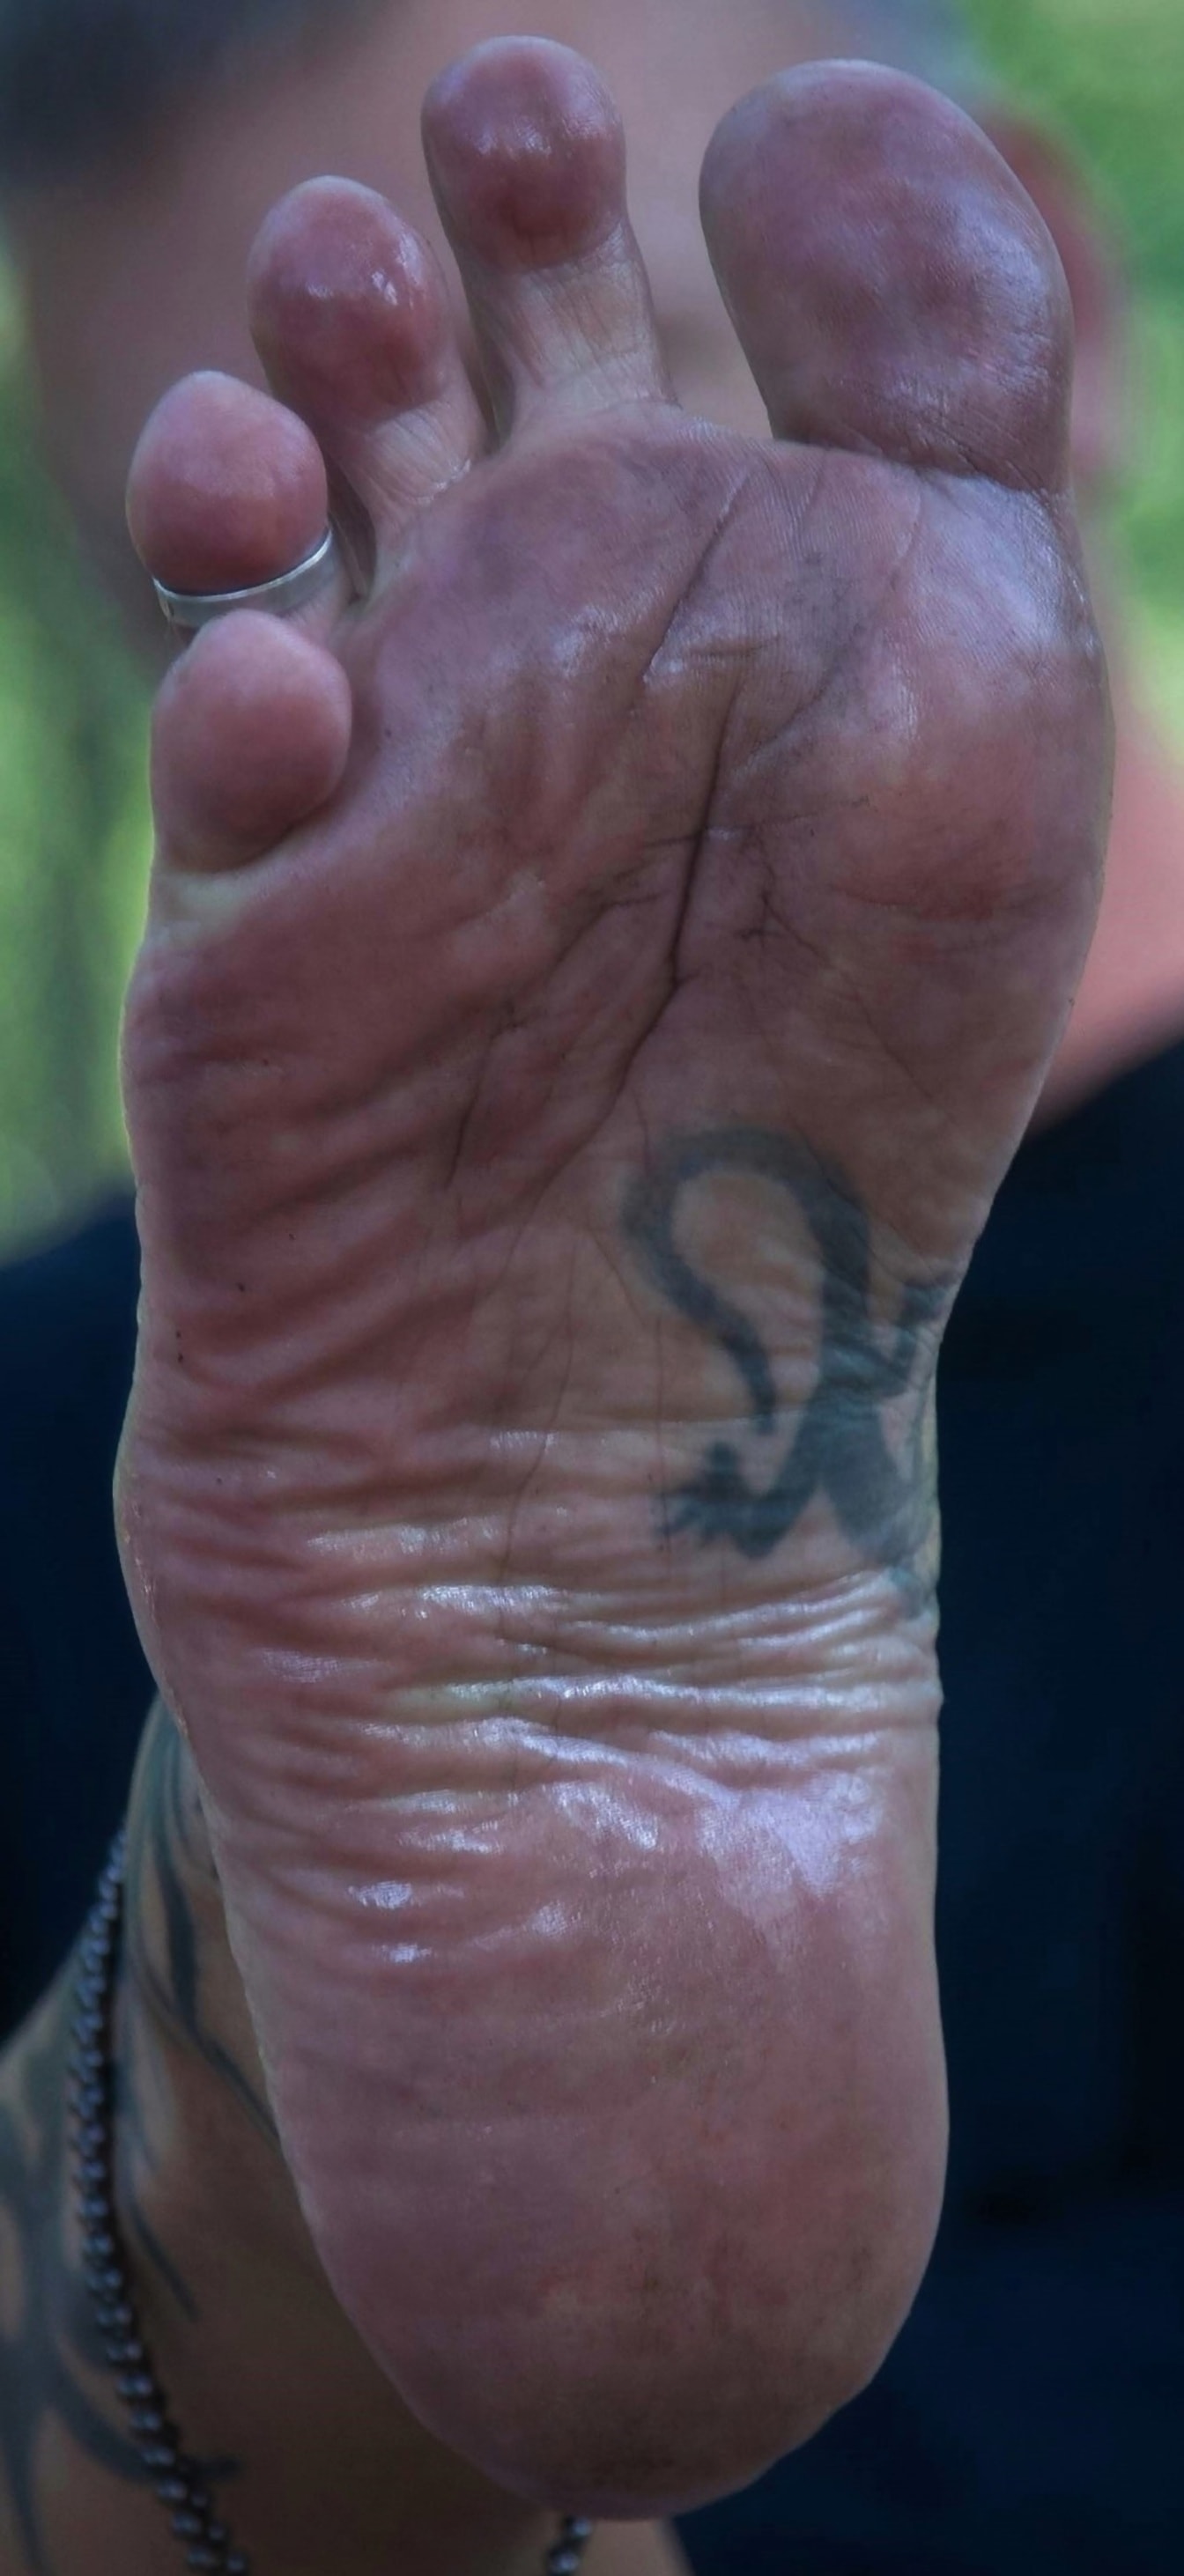 Босоногий мужчина крупным планом грязной ноги с татуировкой и кольцом